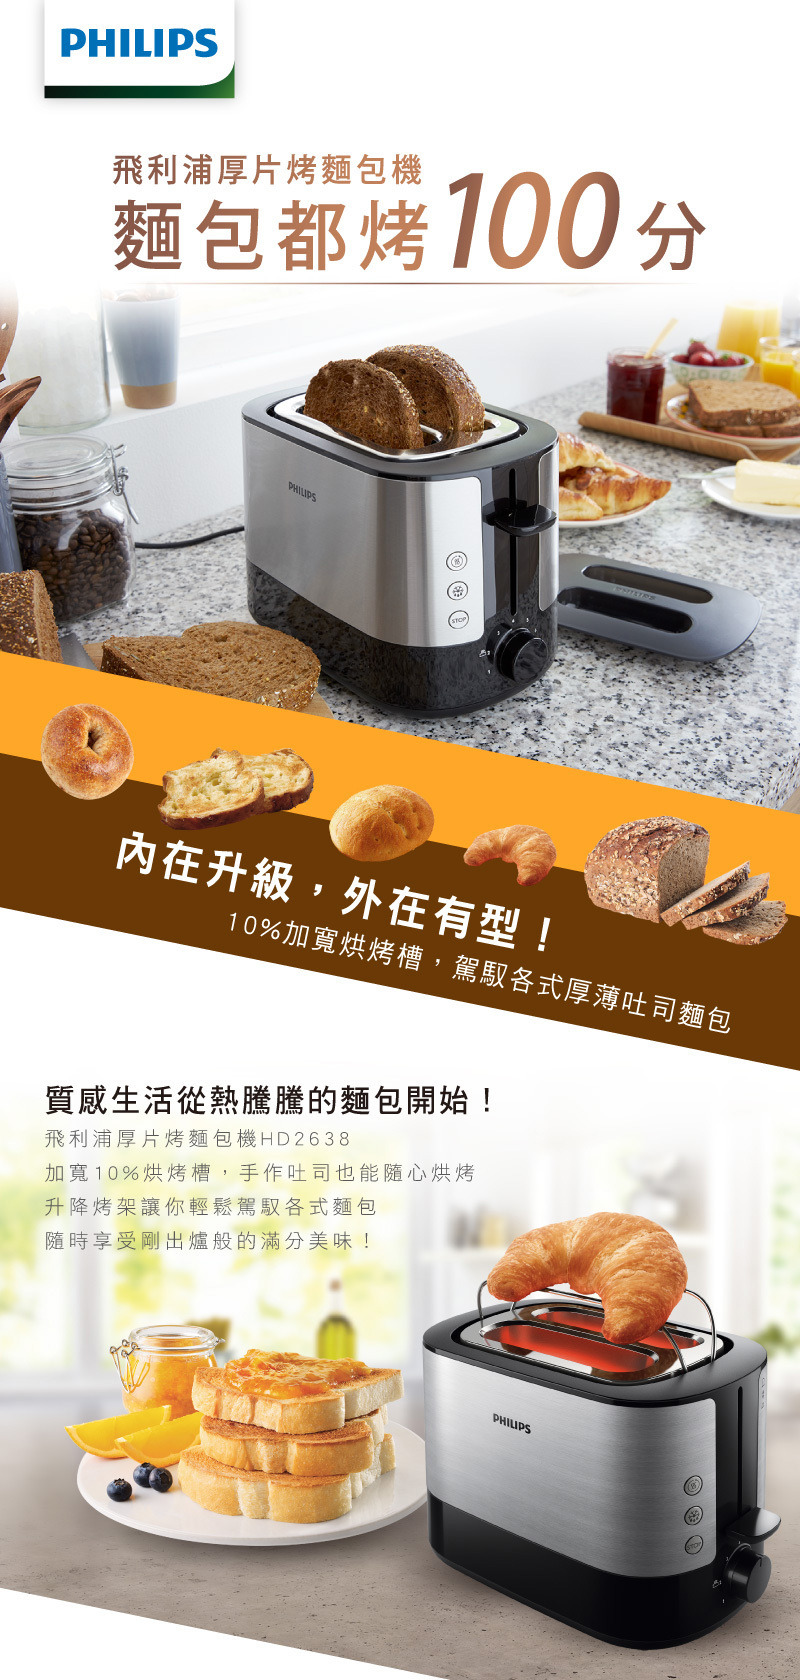 廚房家電_電子式智慧型厚片烤麵包機_HD2638/91_1